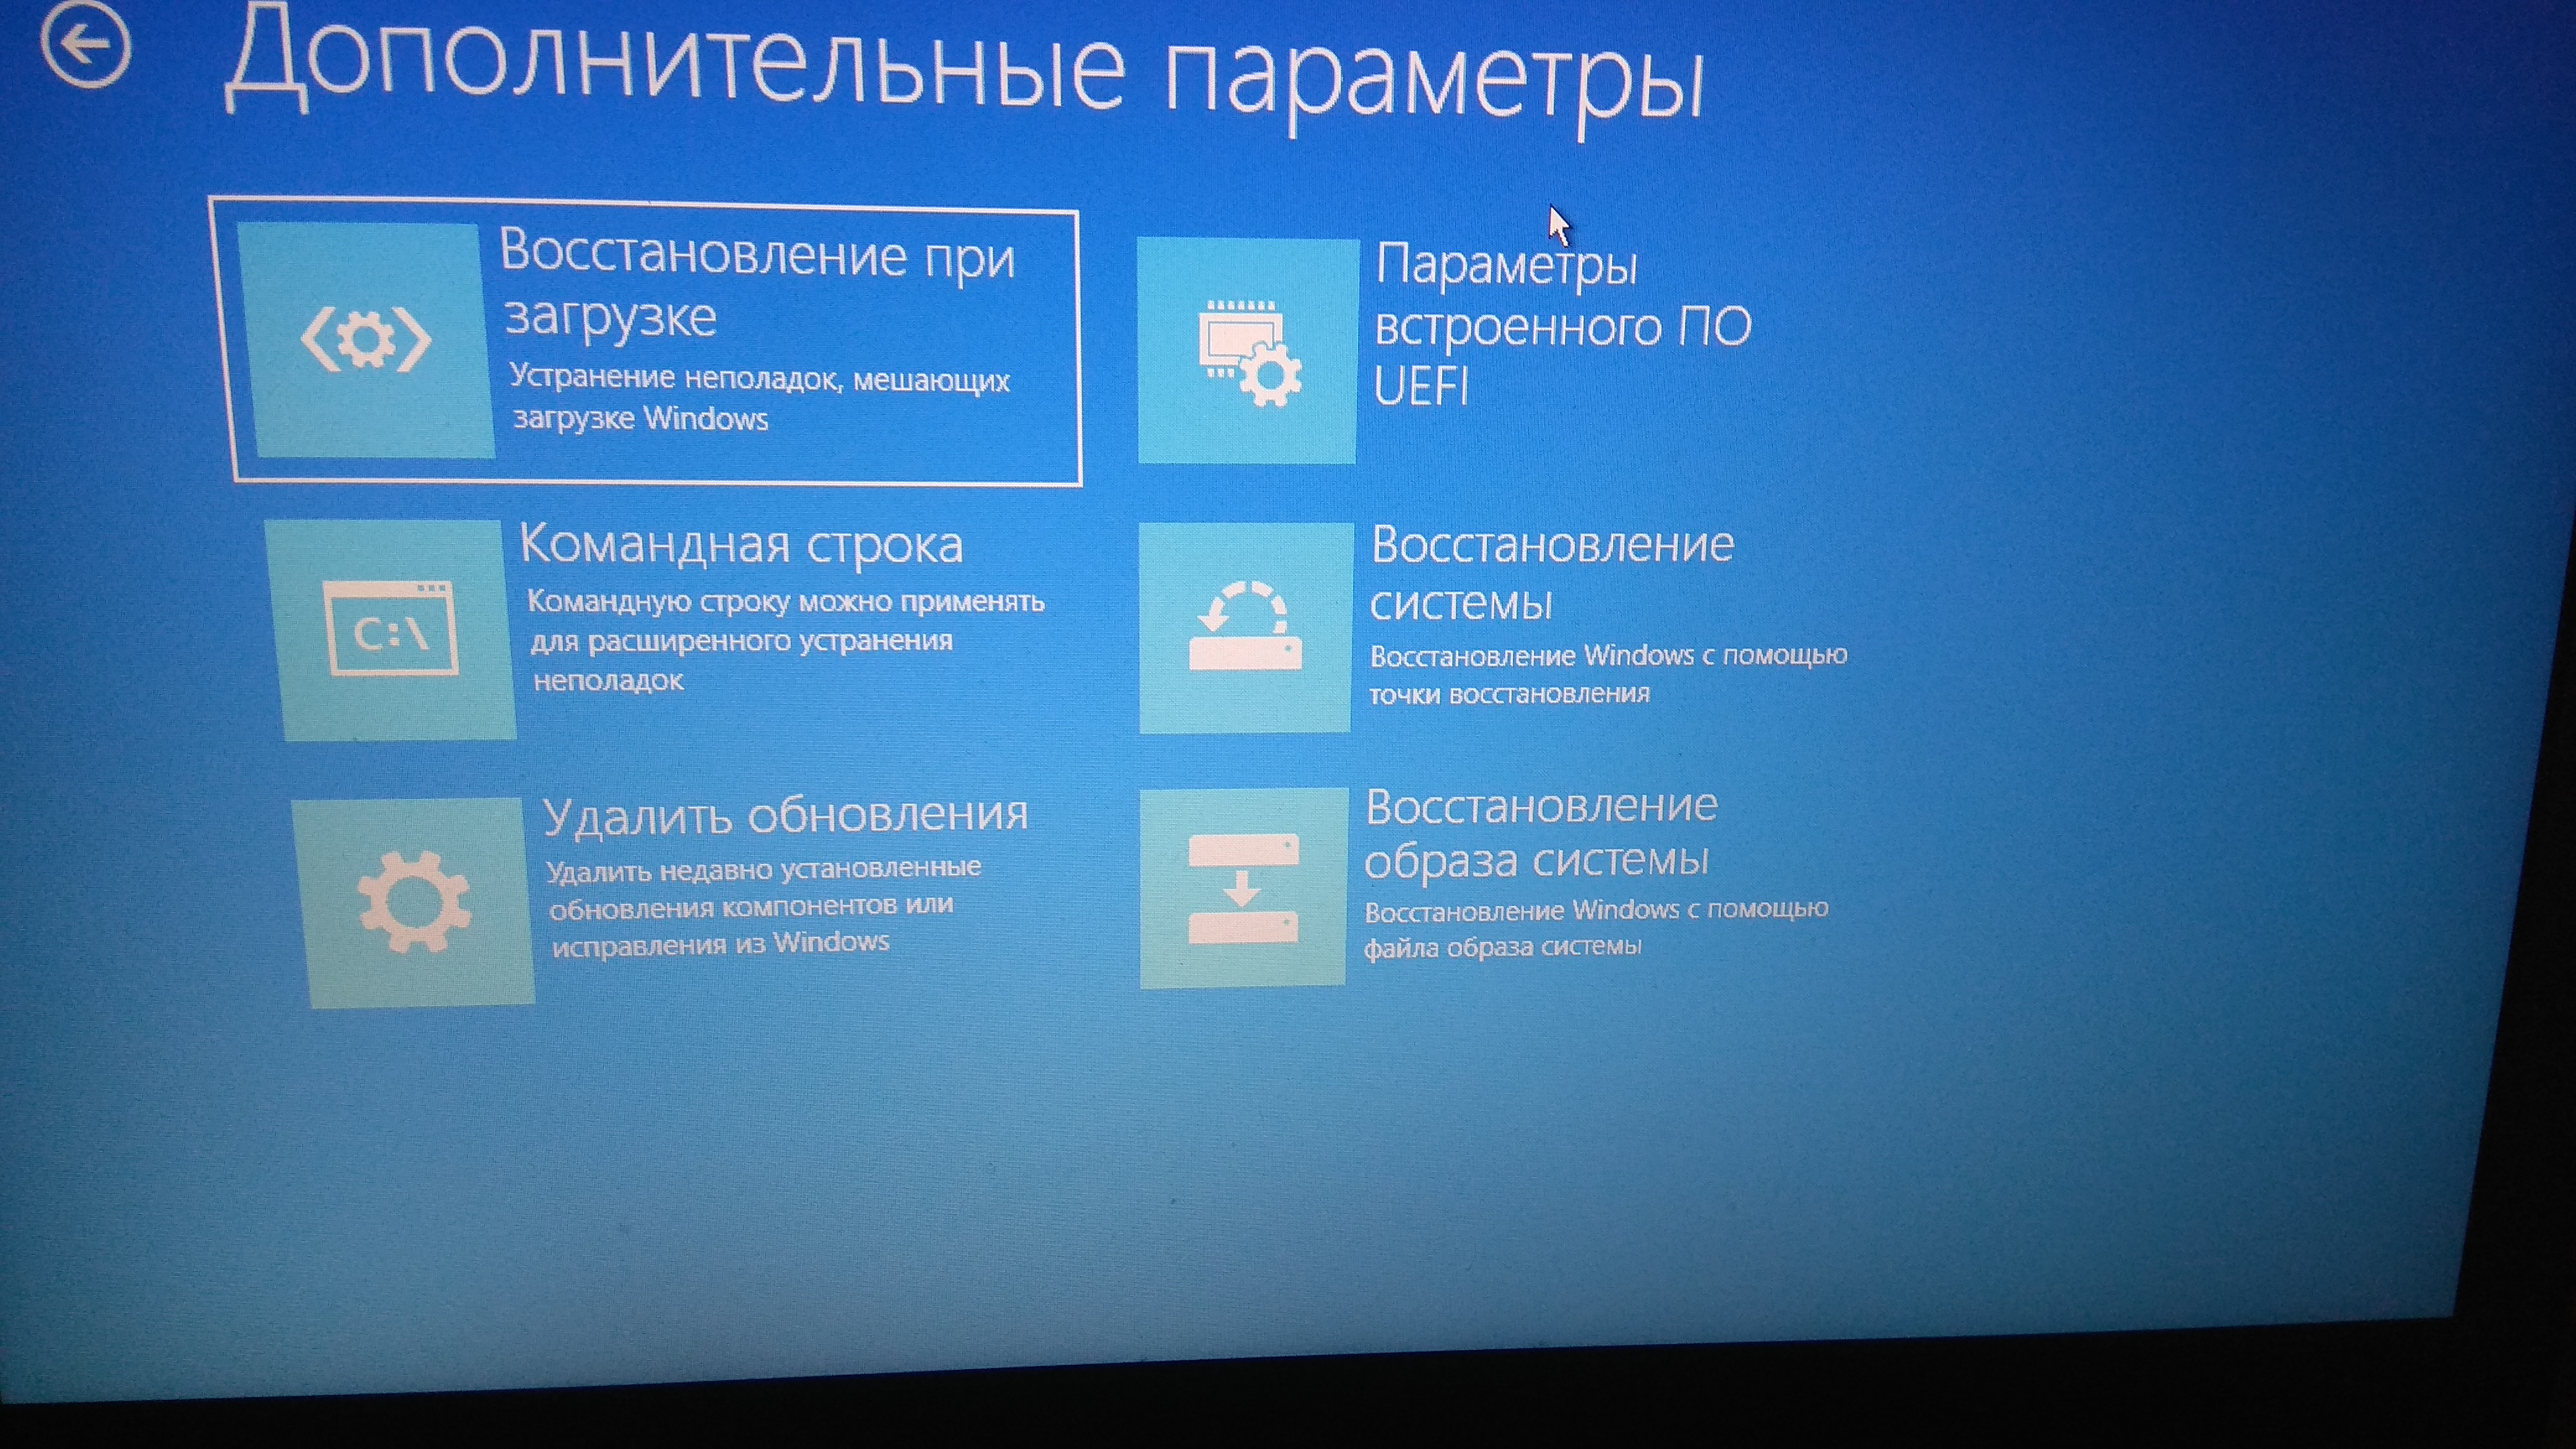 Исходное состояние Windows 10